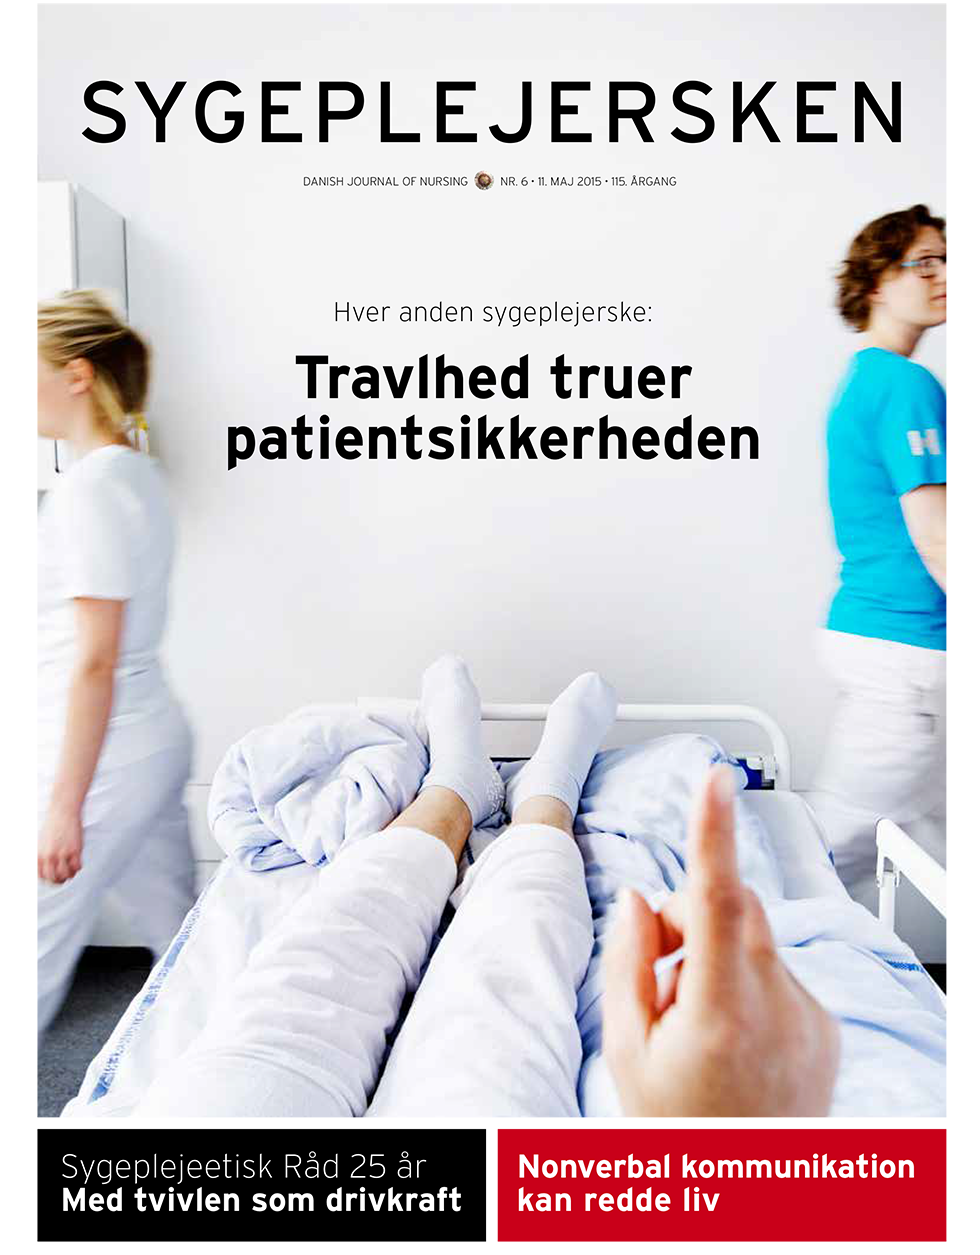 Sygeplejersken_2015_06 - magasinforsiden